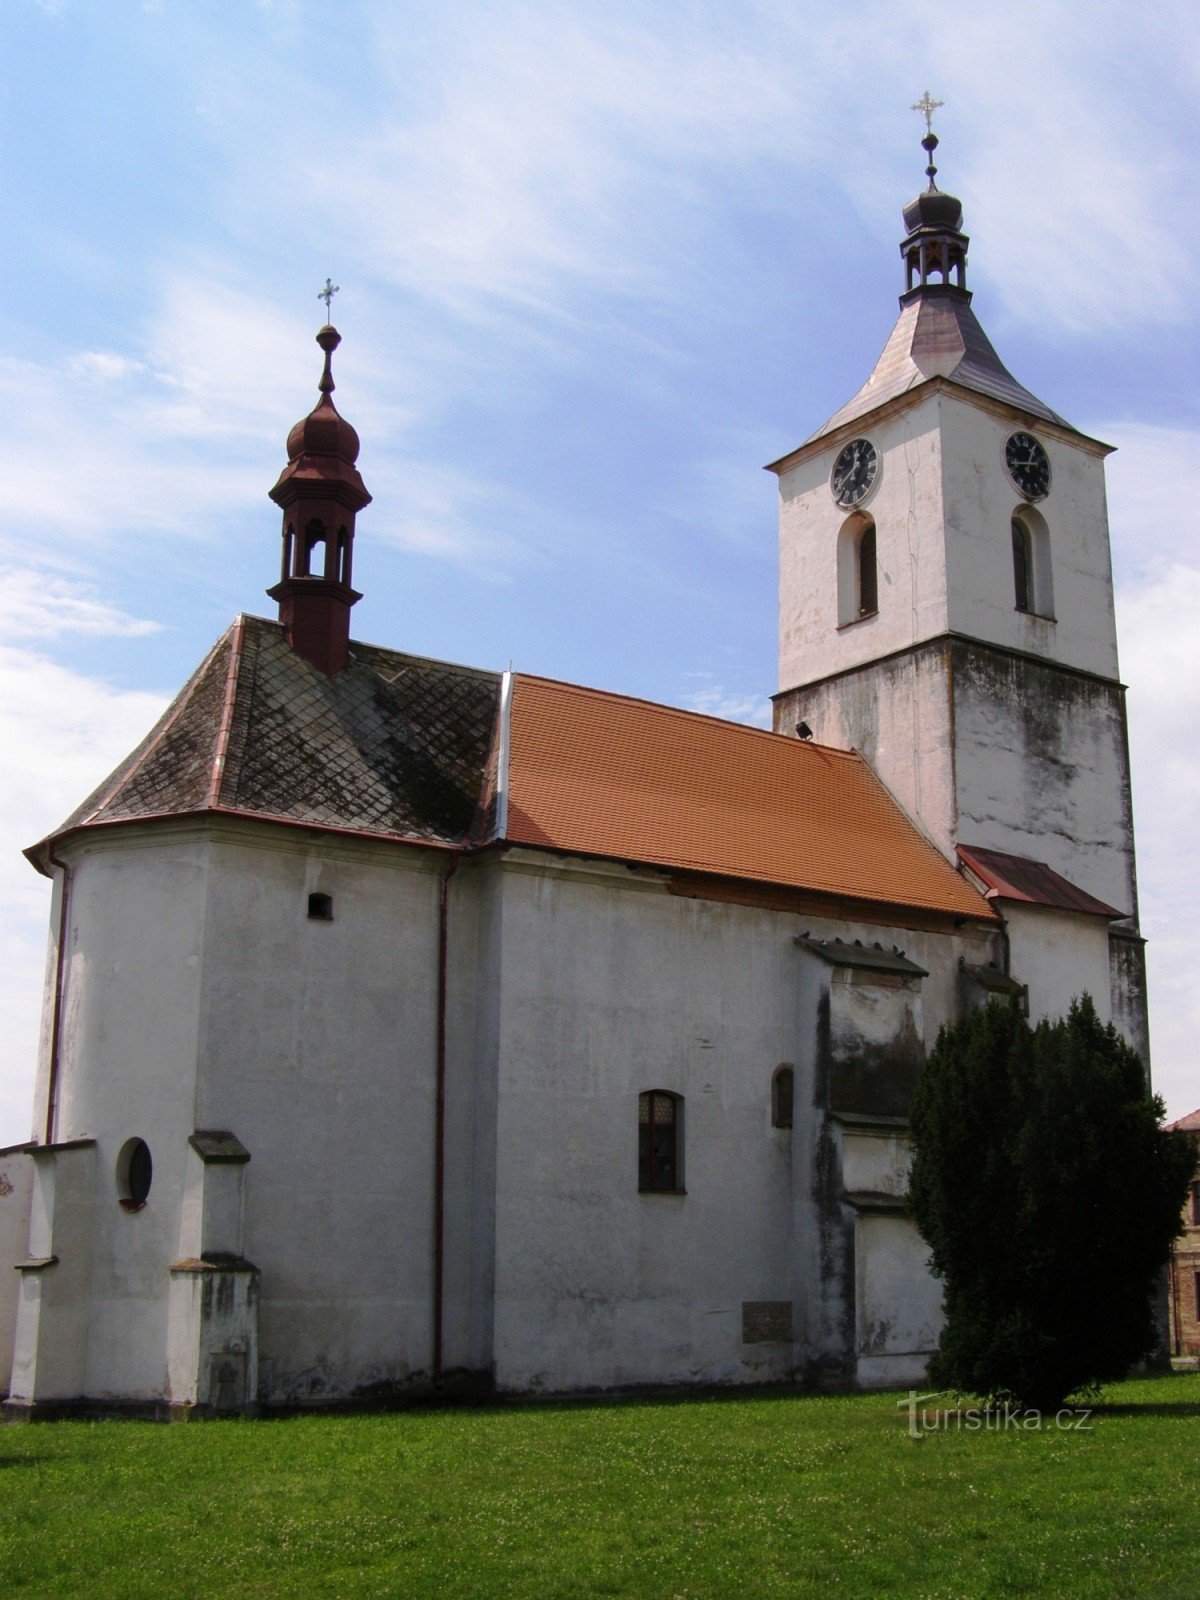 Starý Bydžov - church of St. Procopius